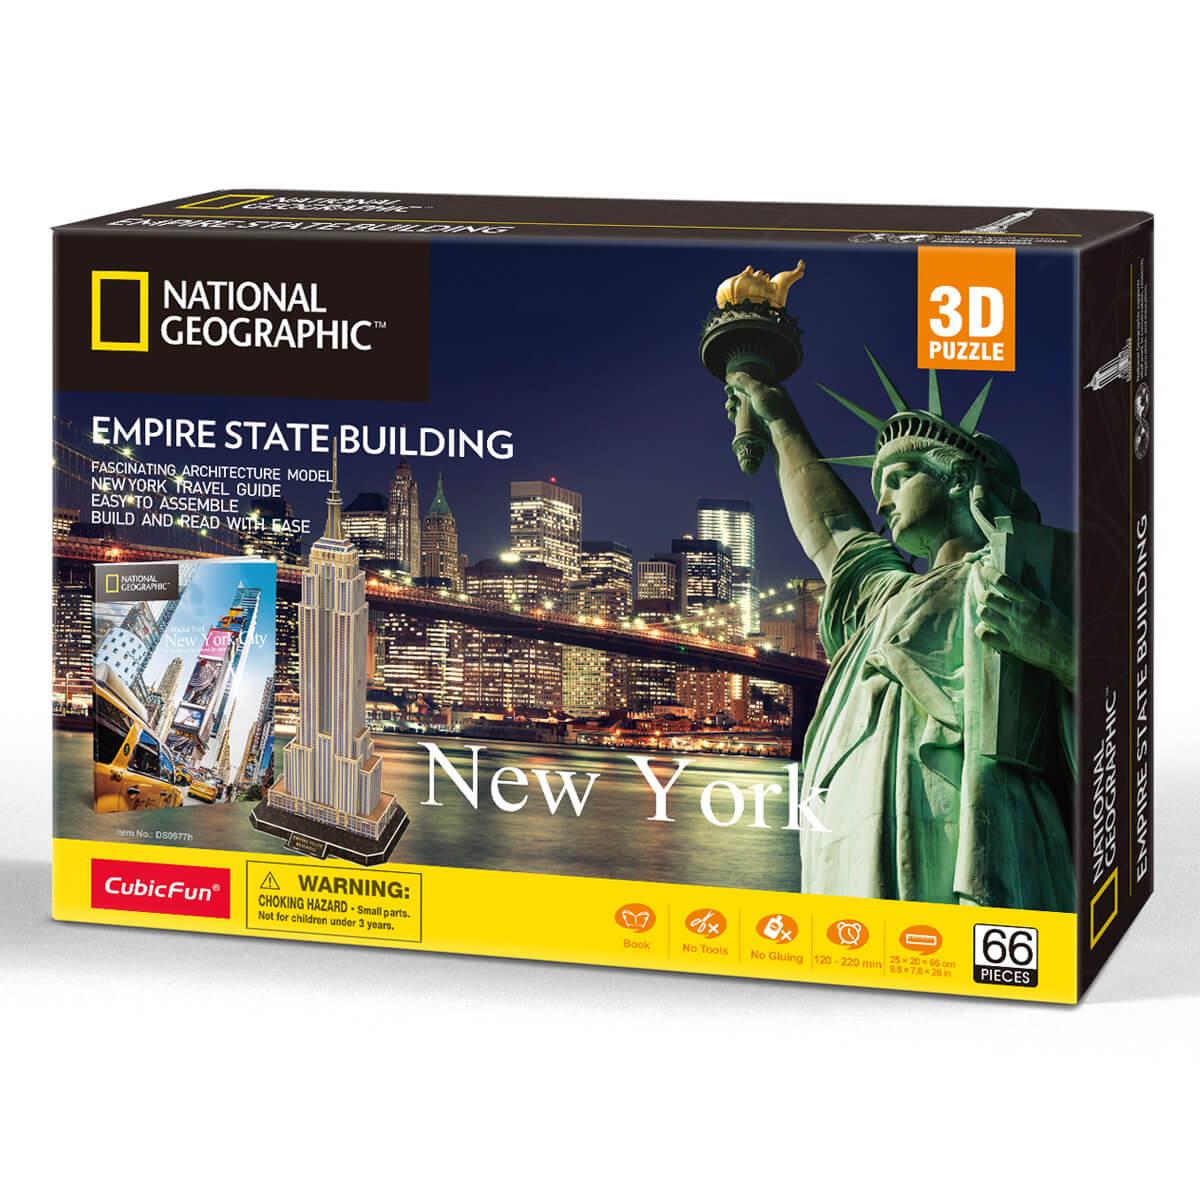 ΠΑΙΔΙ | Παιχνίδια | Επιτραπέζια - Παζλ - Βιβλία - Χειροτεχνίες | PUZZLES - BRAINTEASERS National Geographic Glabal License Empire State Building With 28 Pages Booklet Inside The Box